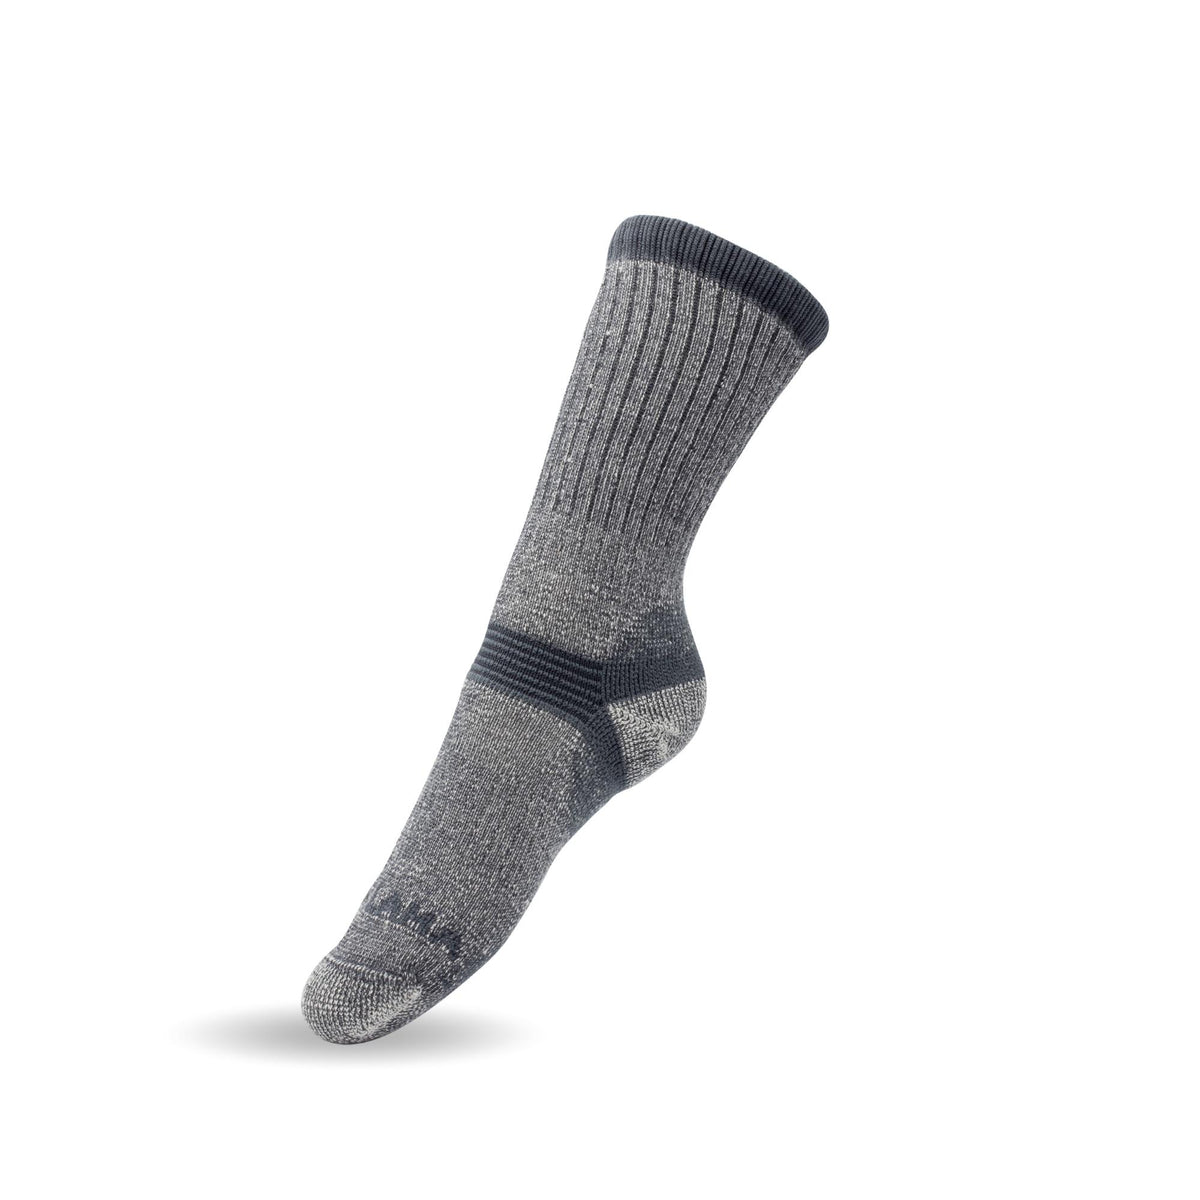 Merino Wool Socks Women - Black and Dark Gray